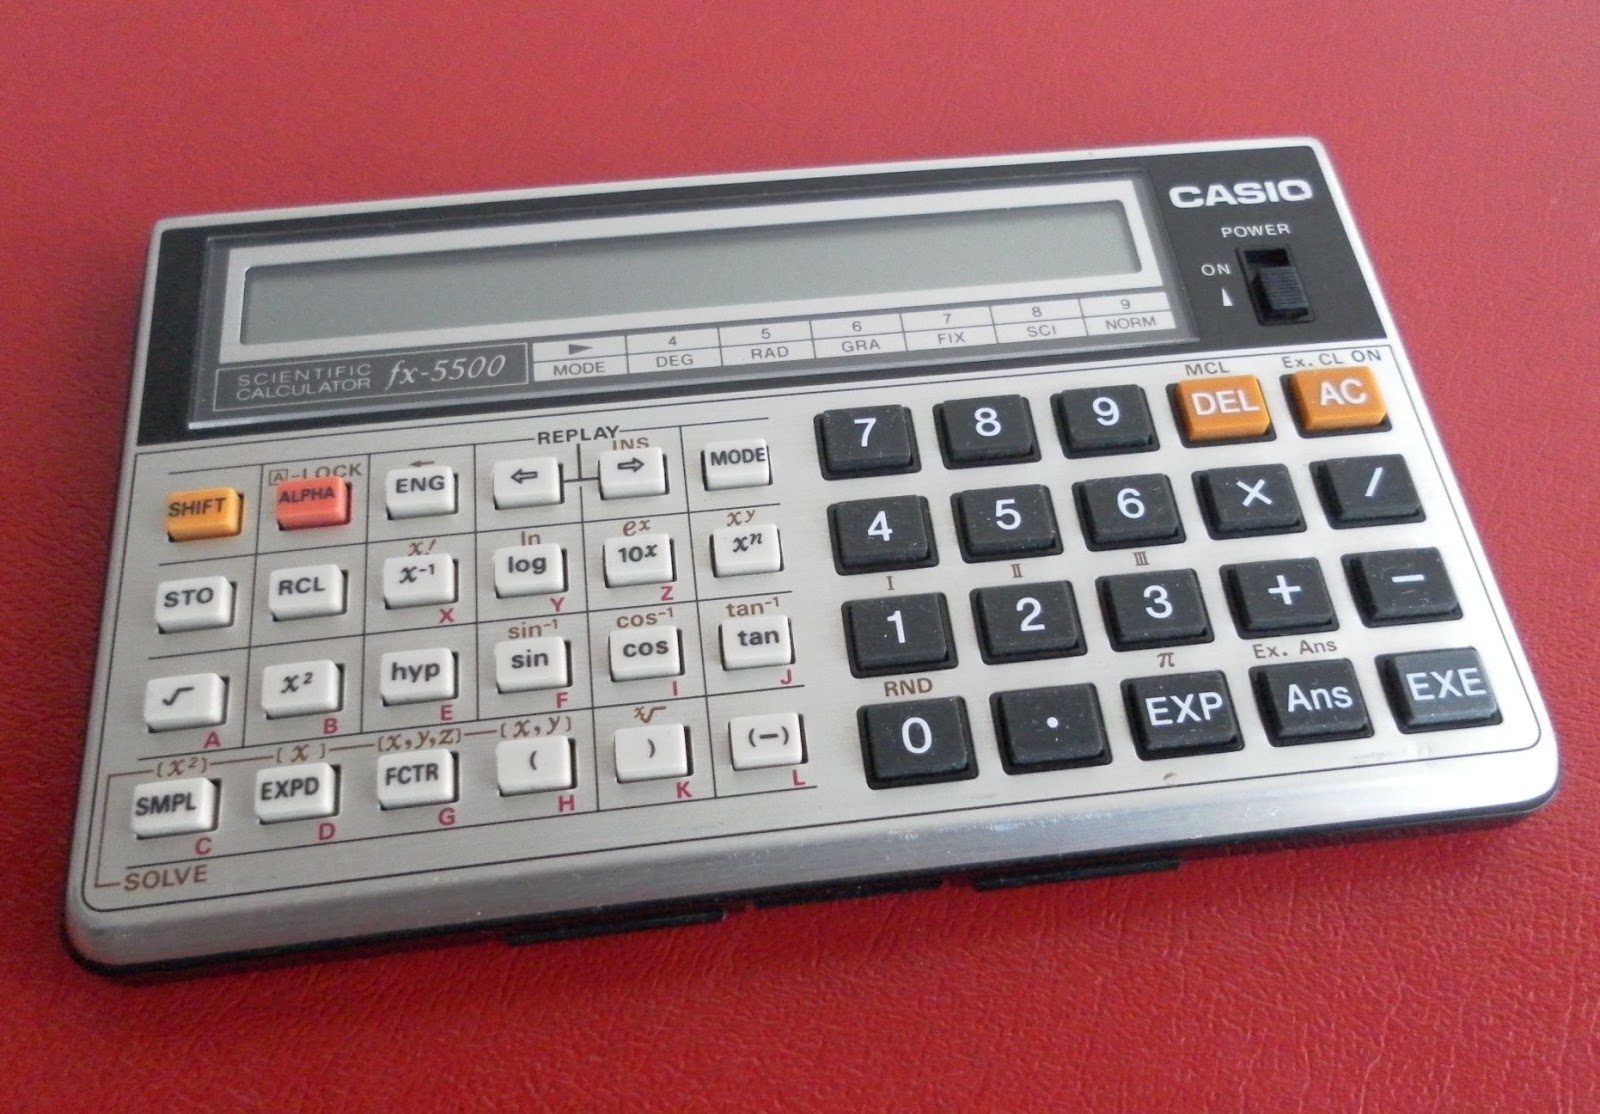 Cape blad Creed CASIO fx-5500 Scientific Calculator: The 1st "C.A.S." pocket calculator?